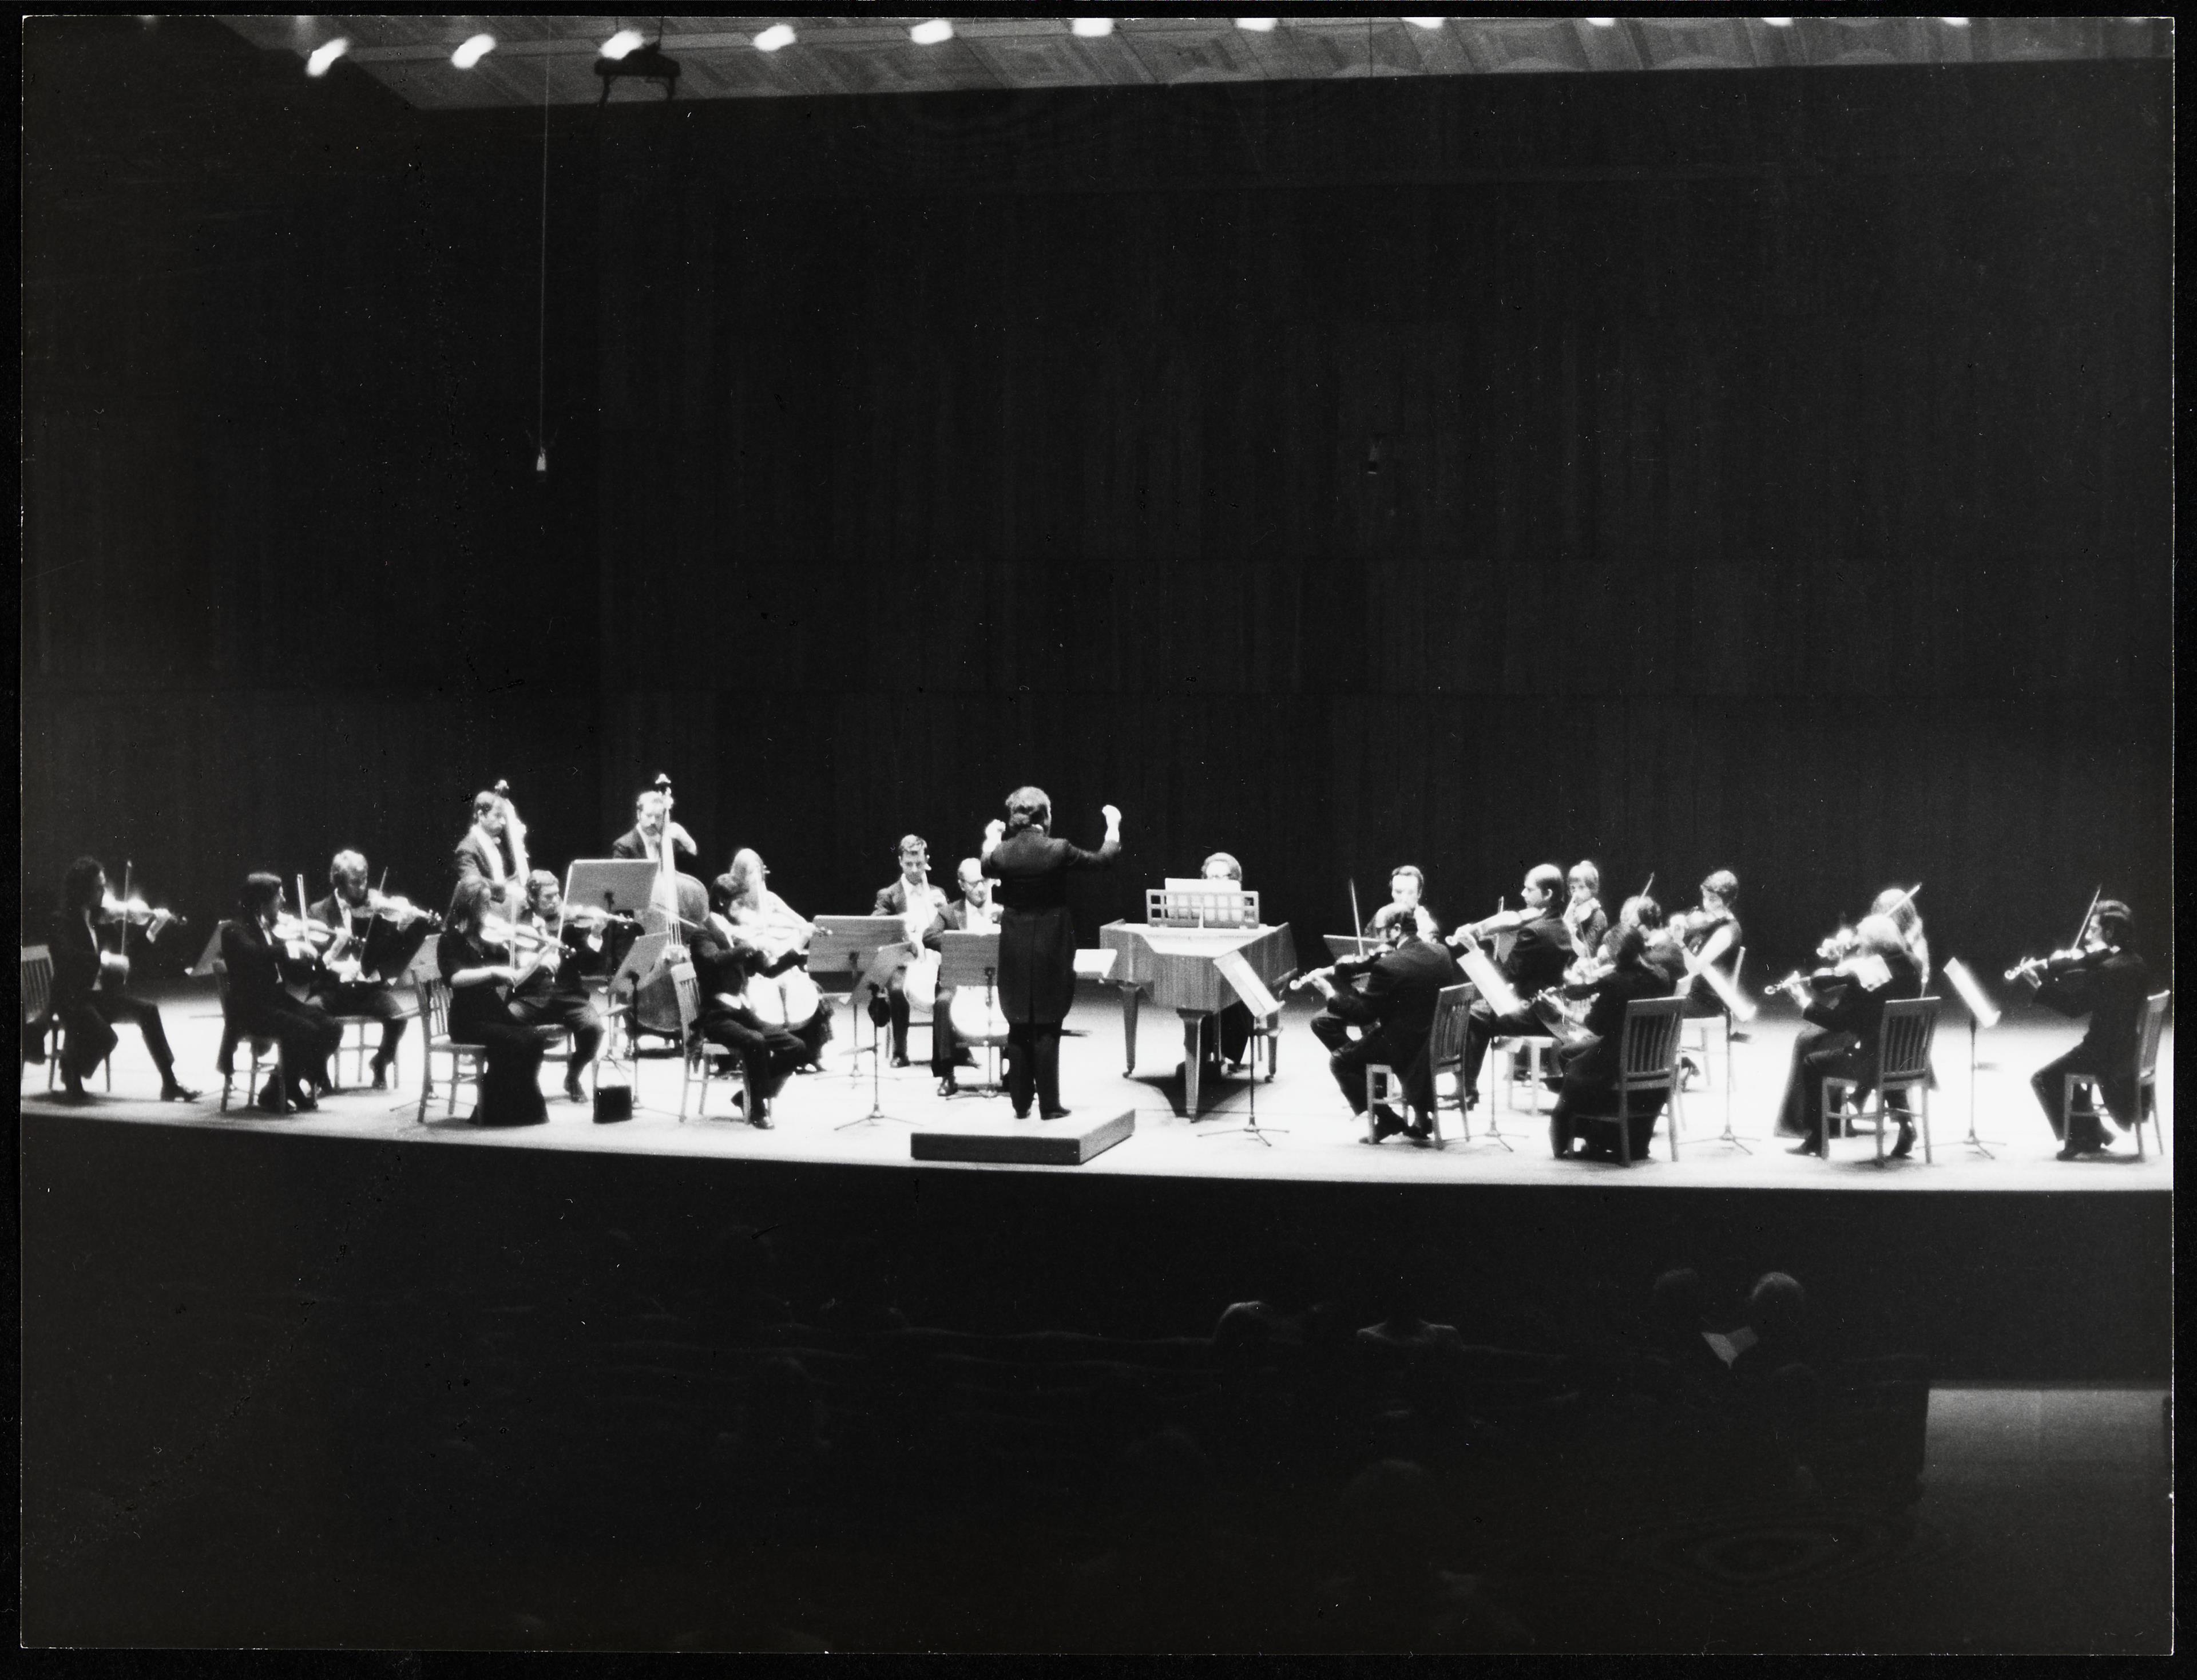 Concerto pela Orquestra da Emissora Nacional e pela Orquestra Gulbenkian, dirigidas por Michel Tabachnik,  com apresentação das obras «Aroura» e «Synaphai» de Iannis Xenakis